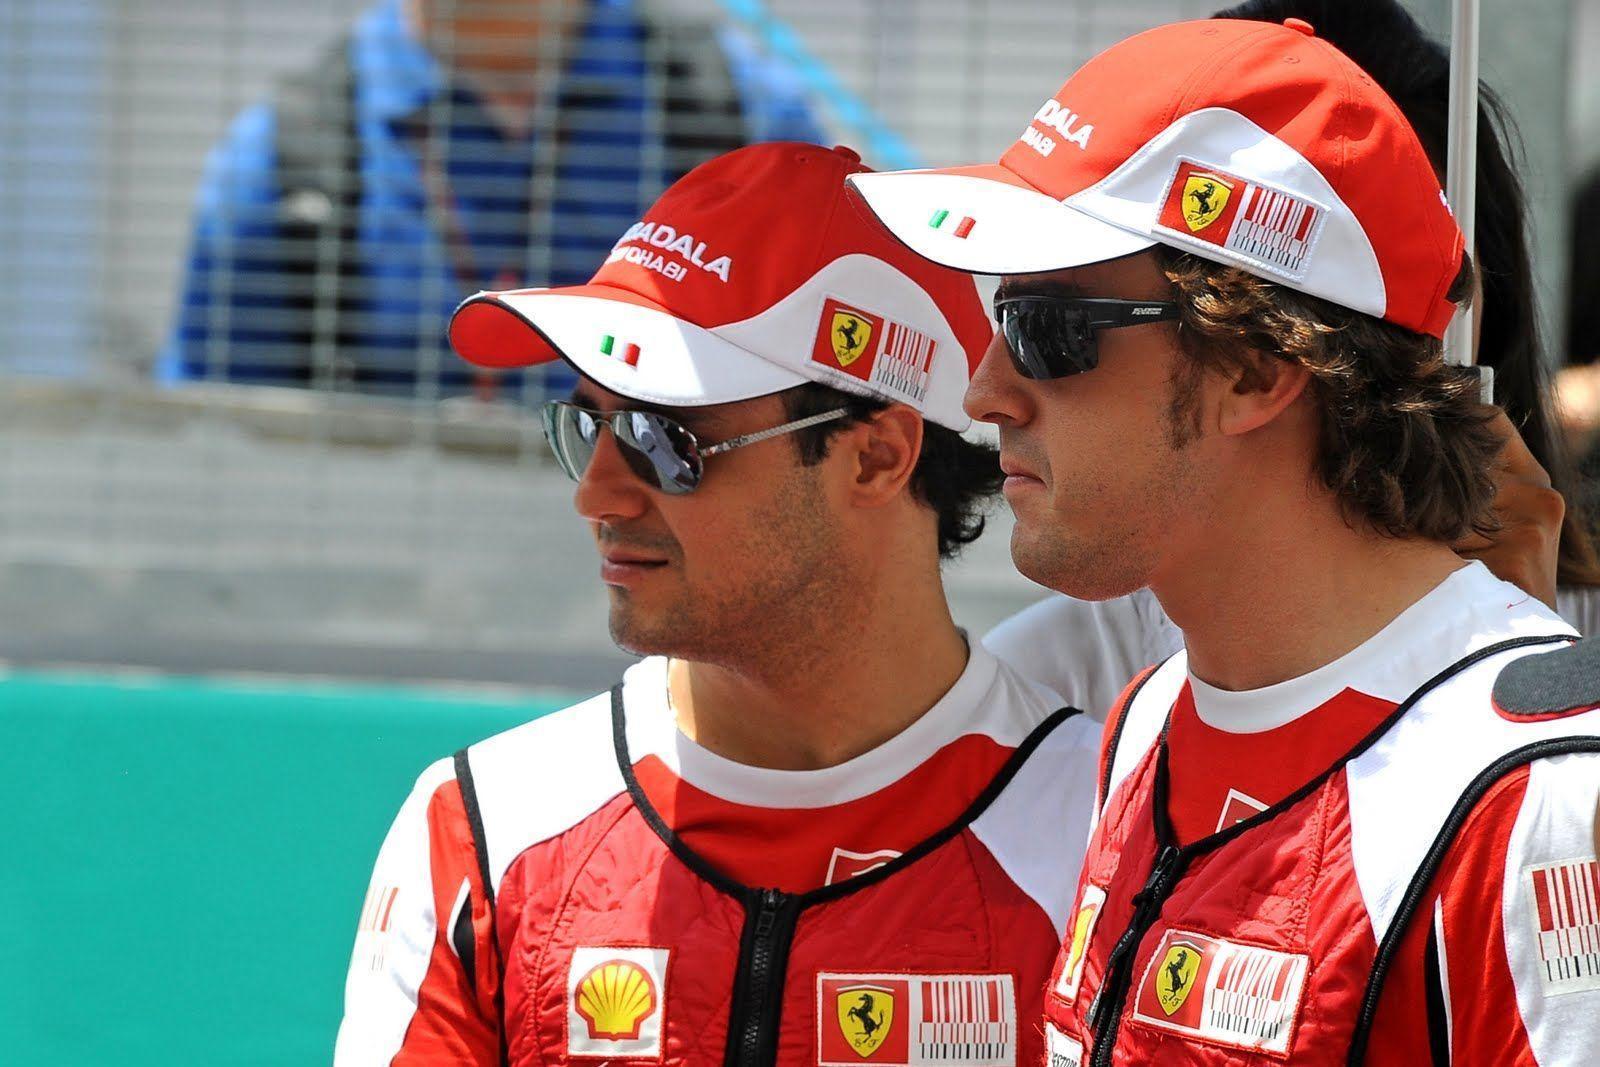 Ferrari Felipe Massa Wallpaper Image